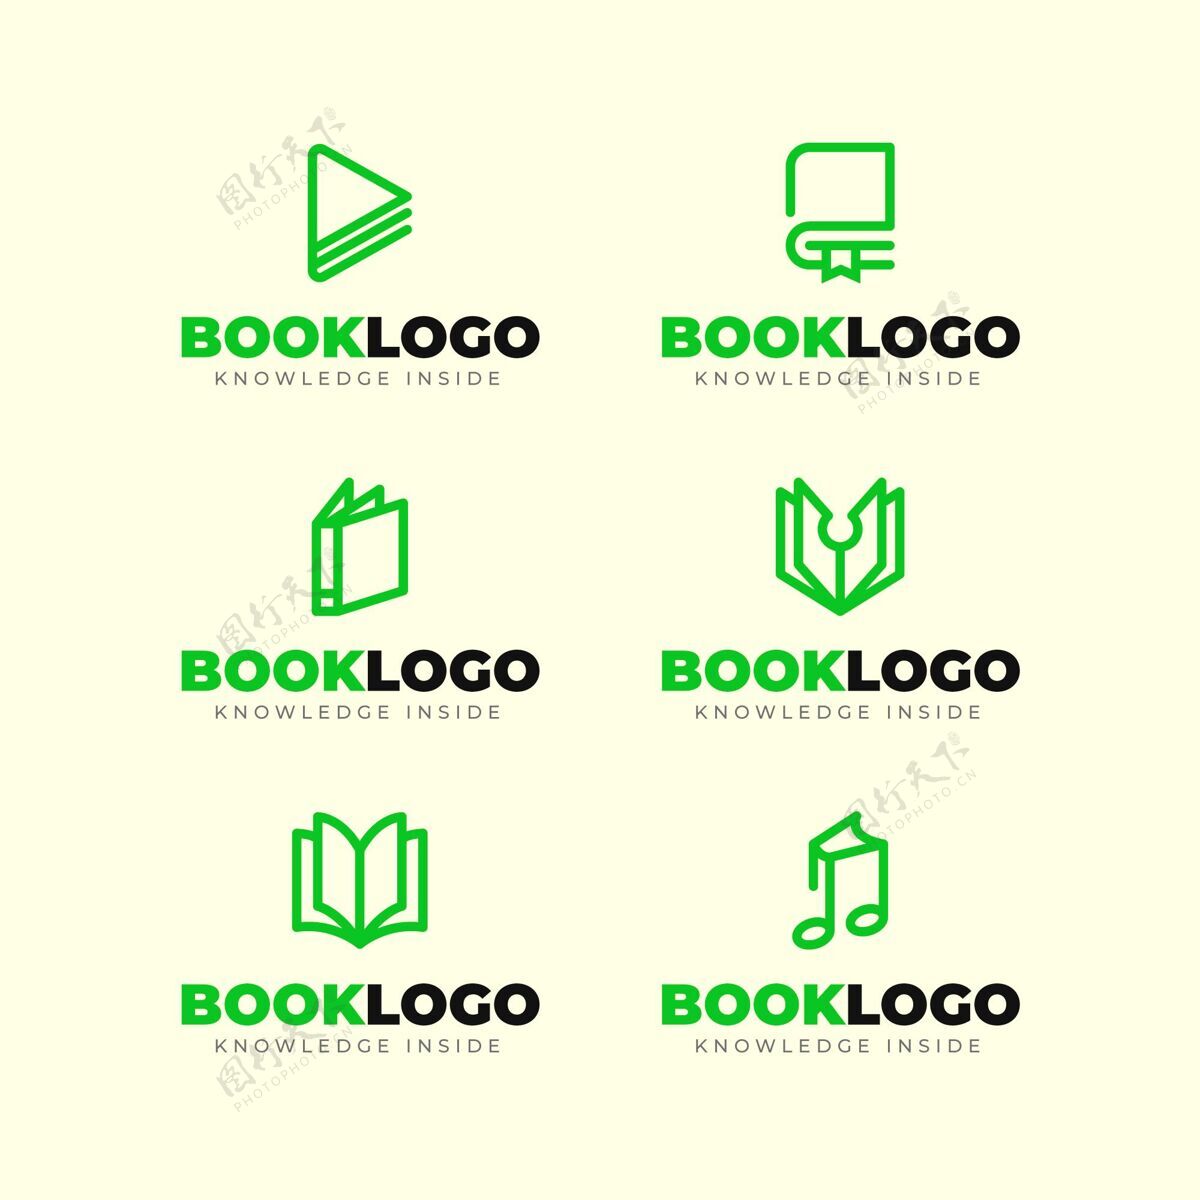 标签线平面设计书籍标志包平面设计书籍标语